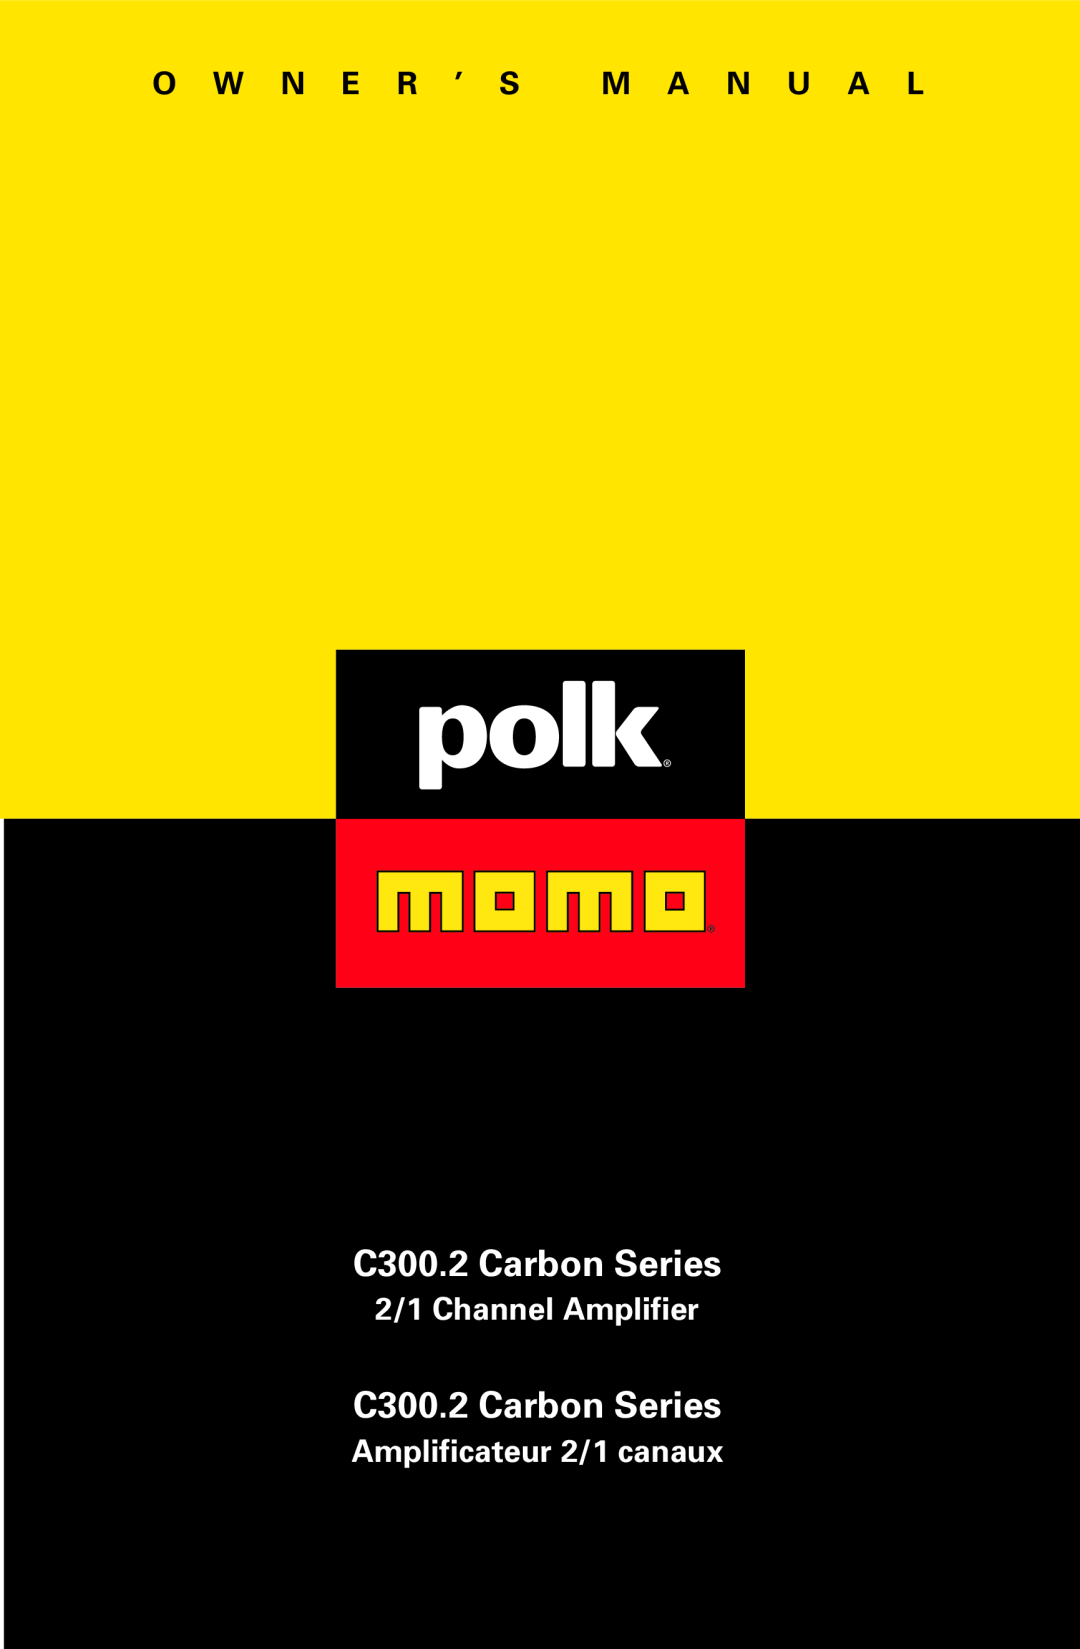 Polk Audio owner manual O W N E R ’ S M A N U A L, C300.2 Carbon Series, 2/1 Channel Amplifier 